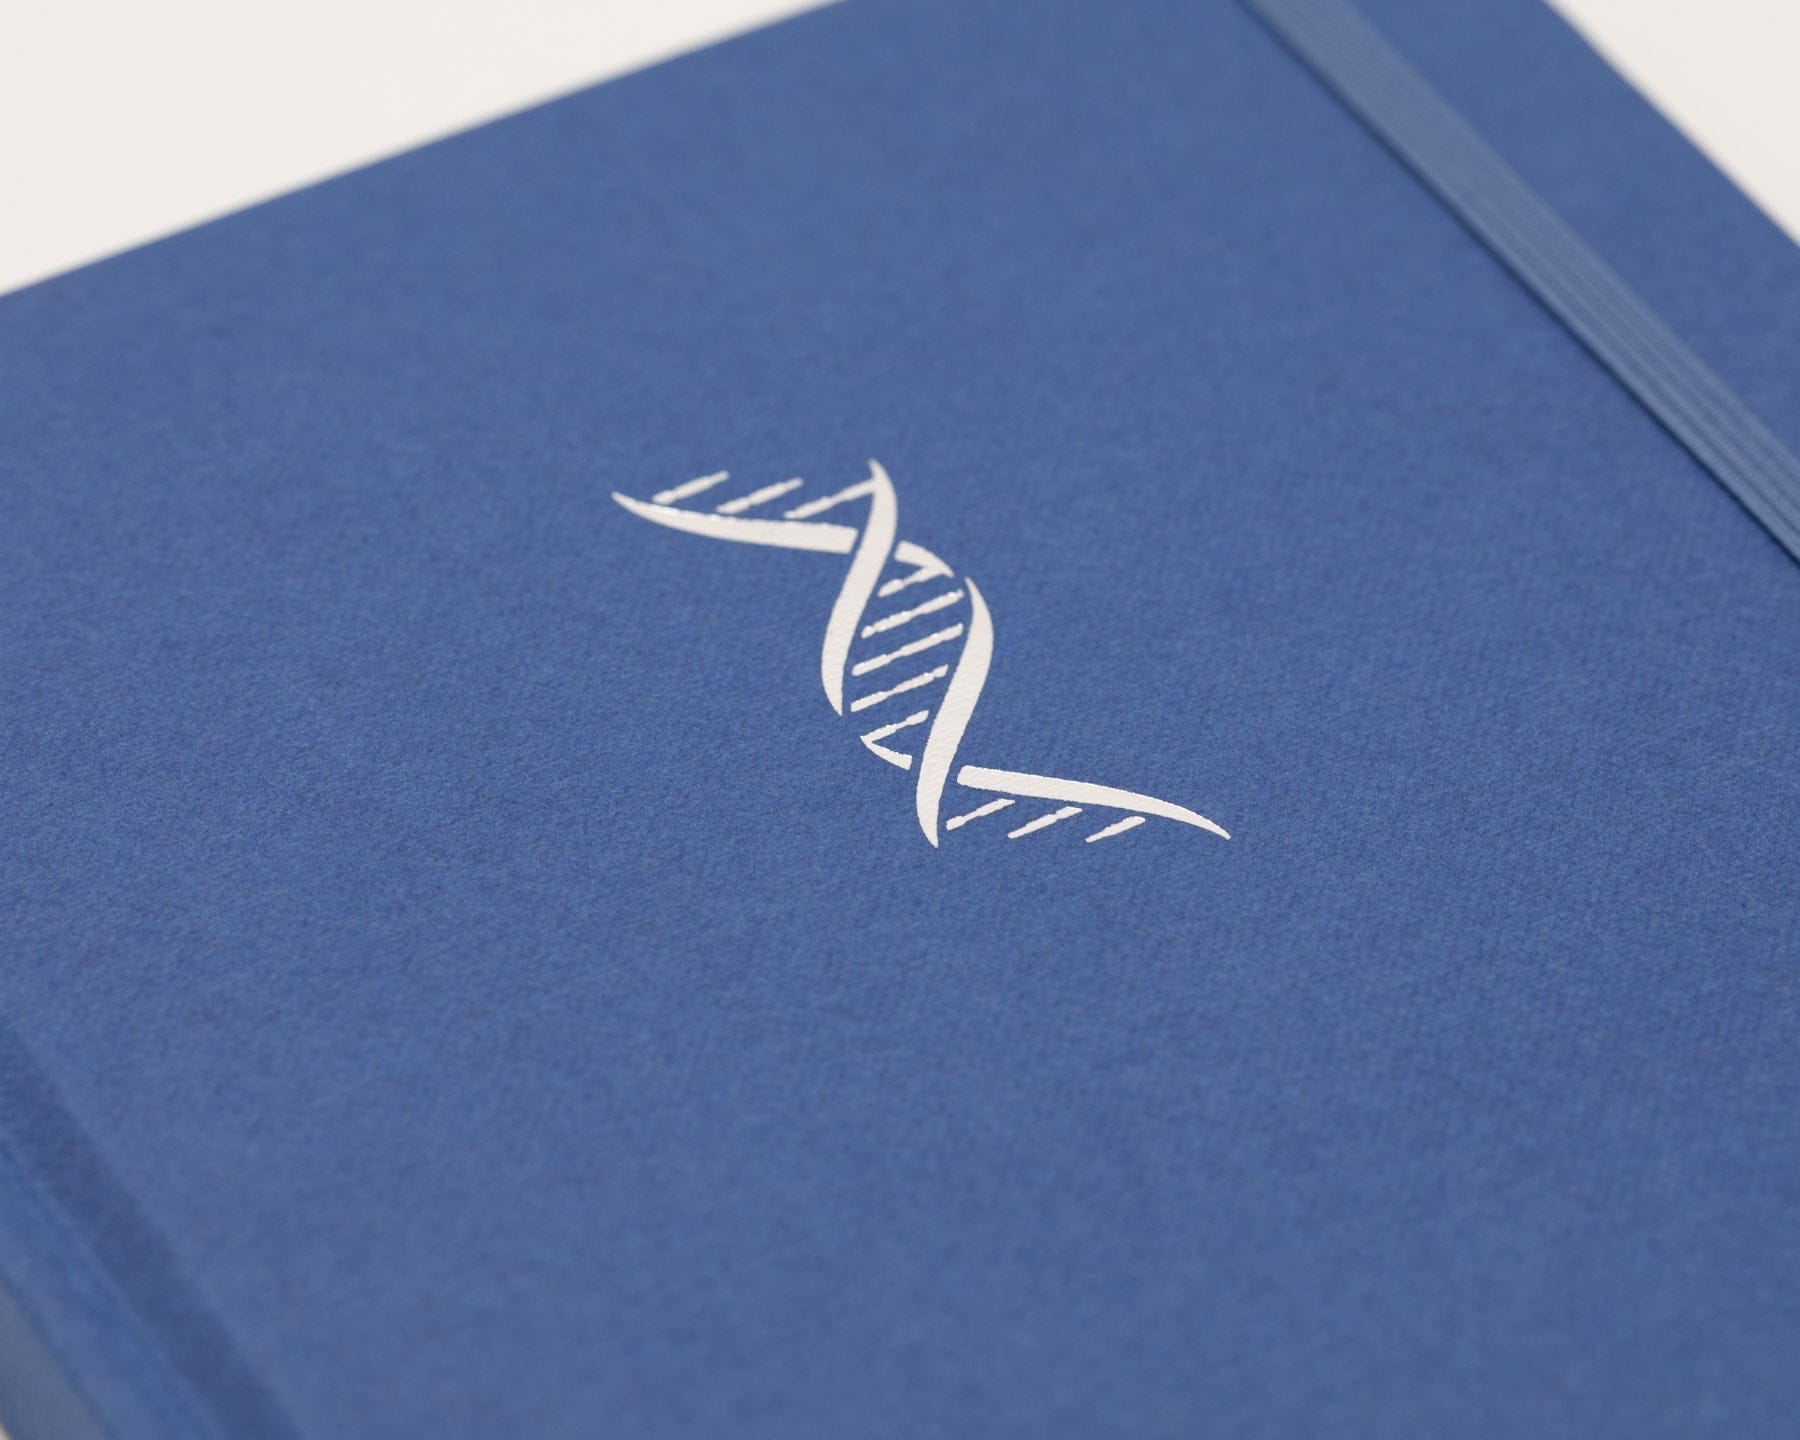 Genetics & DNA A5 Hardcover - Tech Blue Cognitive Surplus